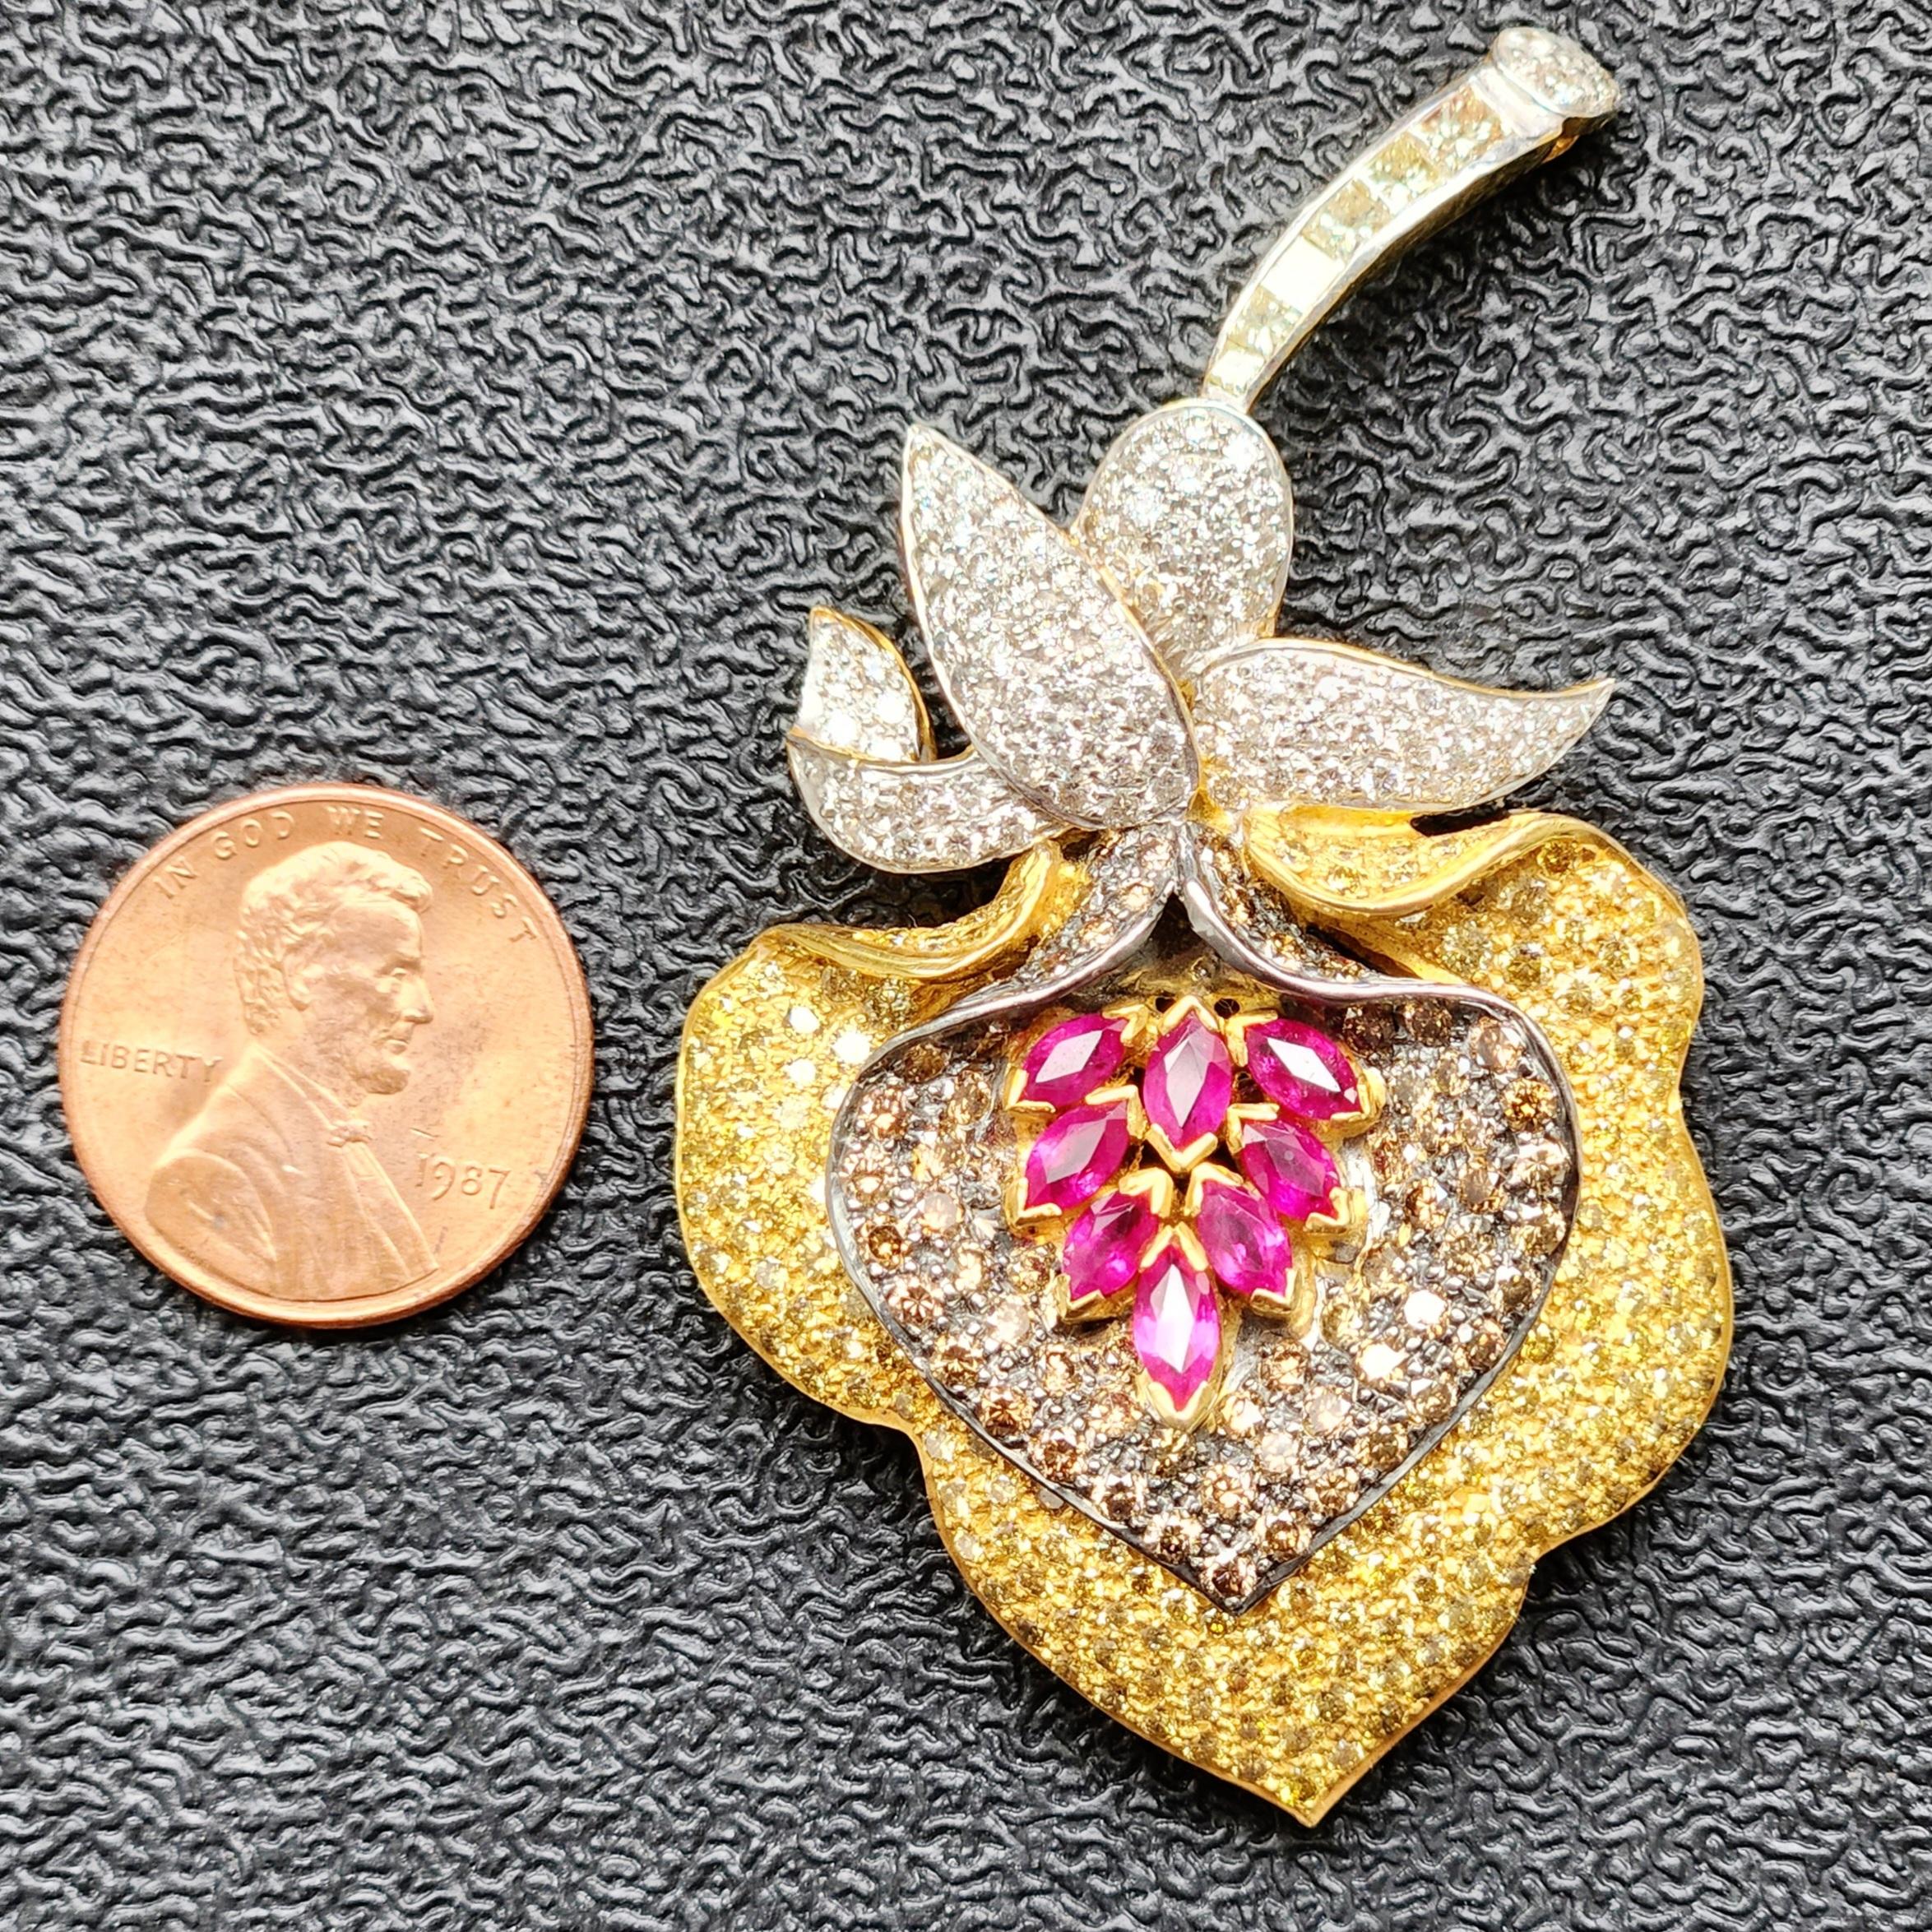 Le pendentif broche en forme de fleur en diamants multicolores de 20,8 grammes est un superbe bijou qui respire l'élégance et la sophistication. Réalisé en or blanc et jaune 18 carats, ce pendentif broche présente une graine centrale en rubis rouge